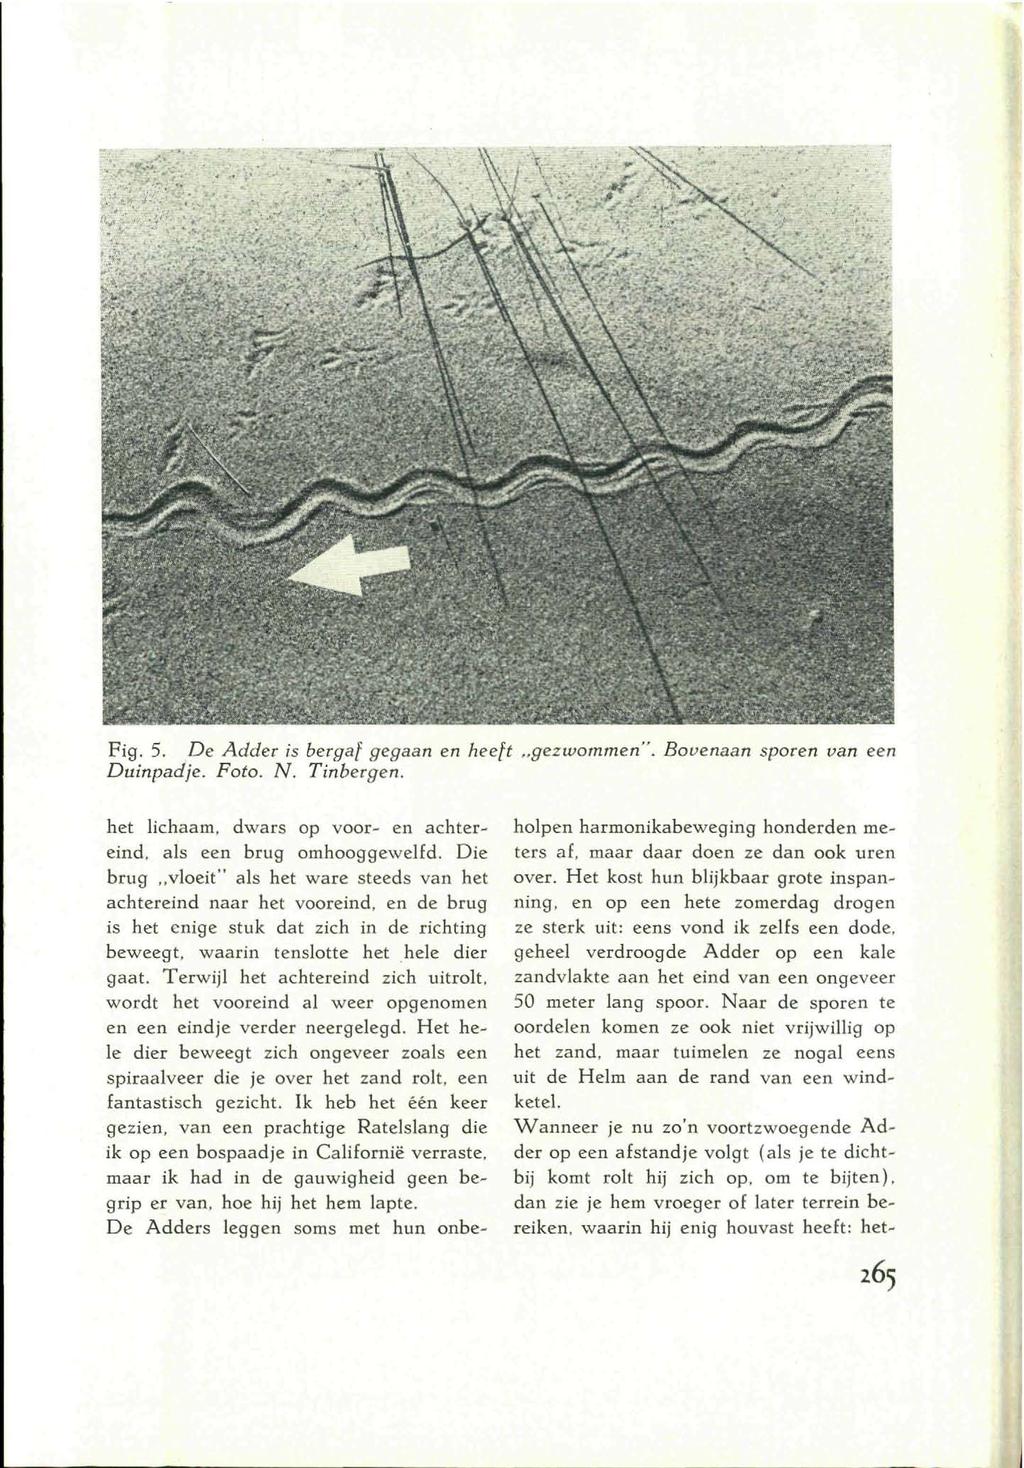 Fig. 5. De Adder is bergaf gegaan en heeft gezwommen". Bovenaan sporen van een Duinpadje. Foto. N. Tinbergen. het lichaam, dwars op voor- en achtereind, als een brug omhooggewelfd.